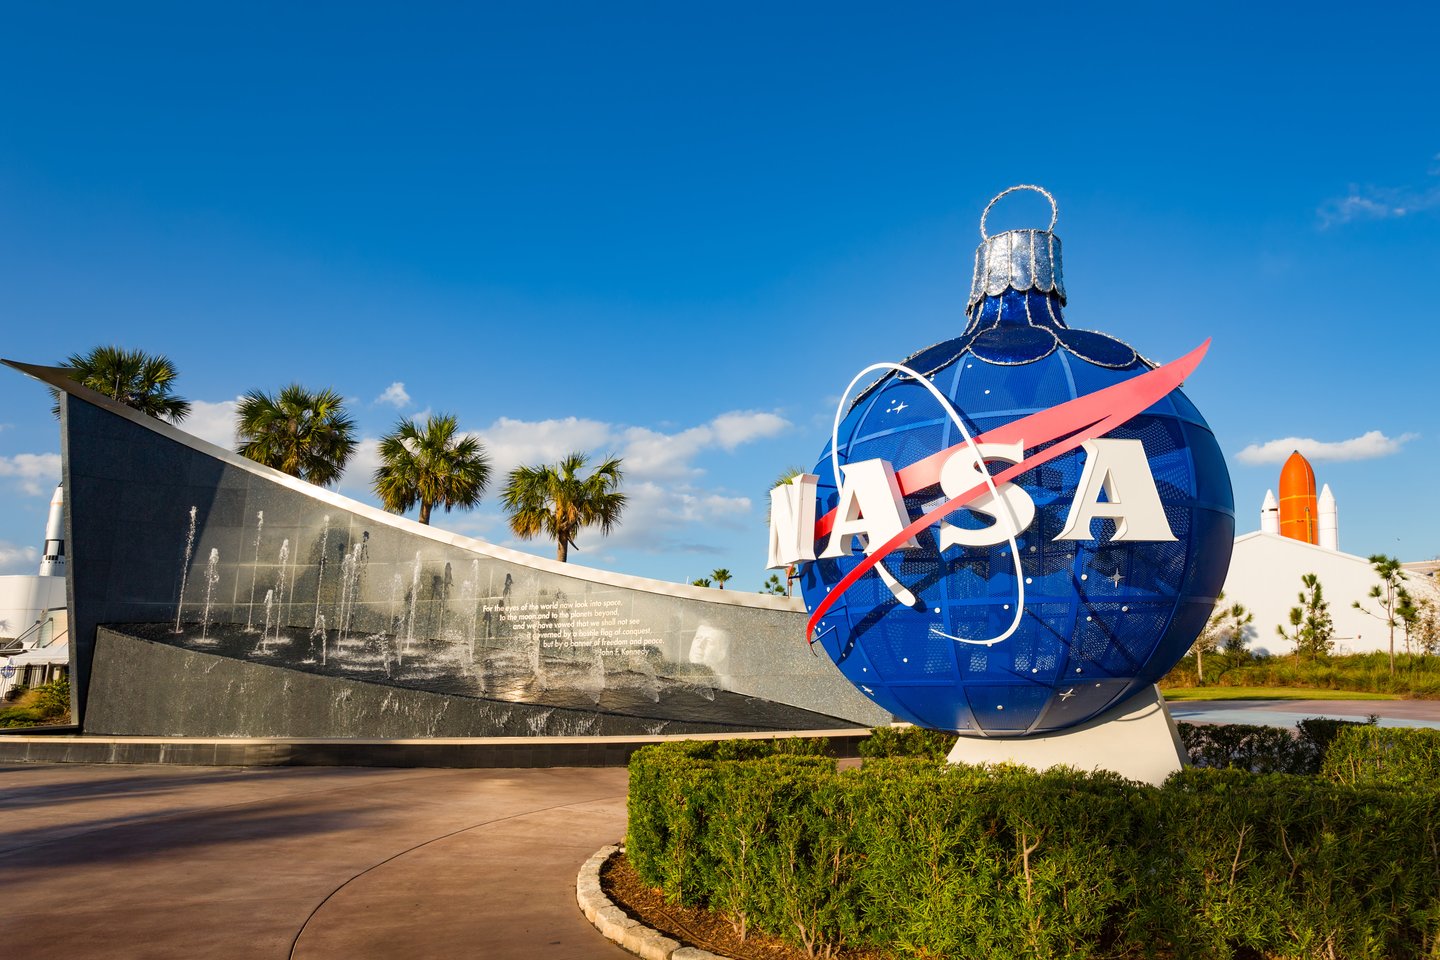  NASA nori atestuoti antrą kompaniją astronautams į žemąja Žemės orbita vadinamą kosmoso sritį skraidinti.<br> 123RF nuotr.